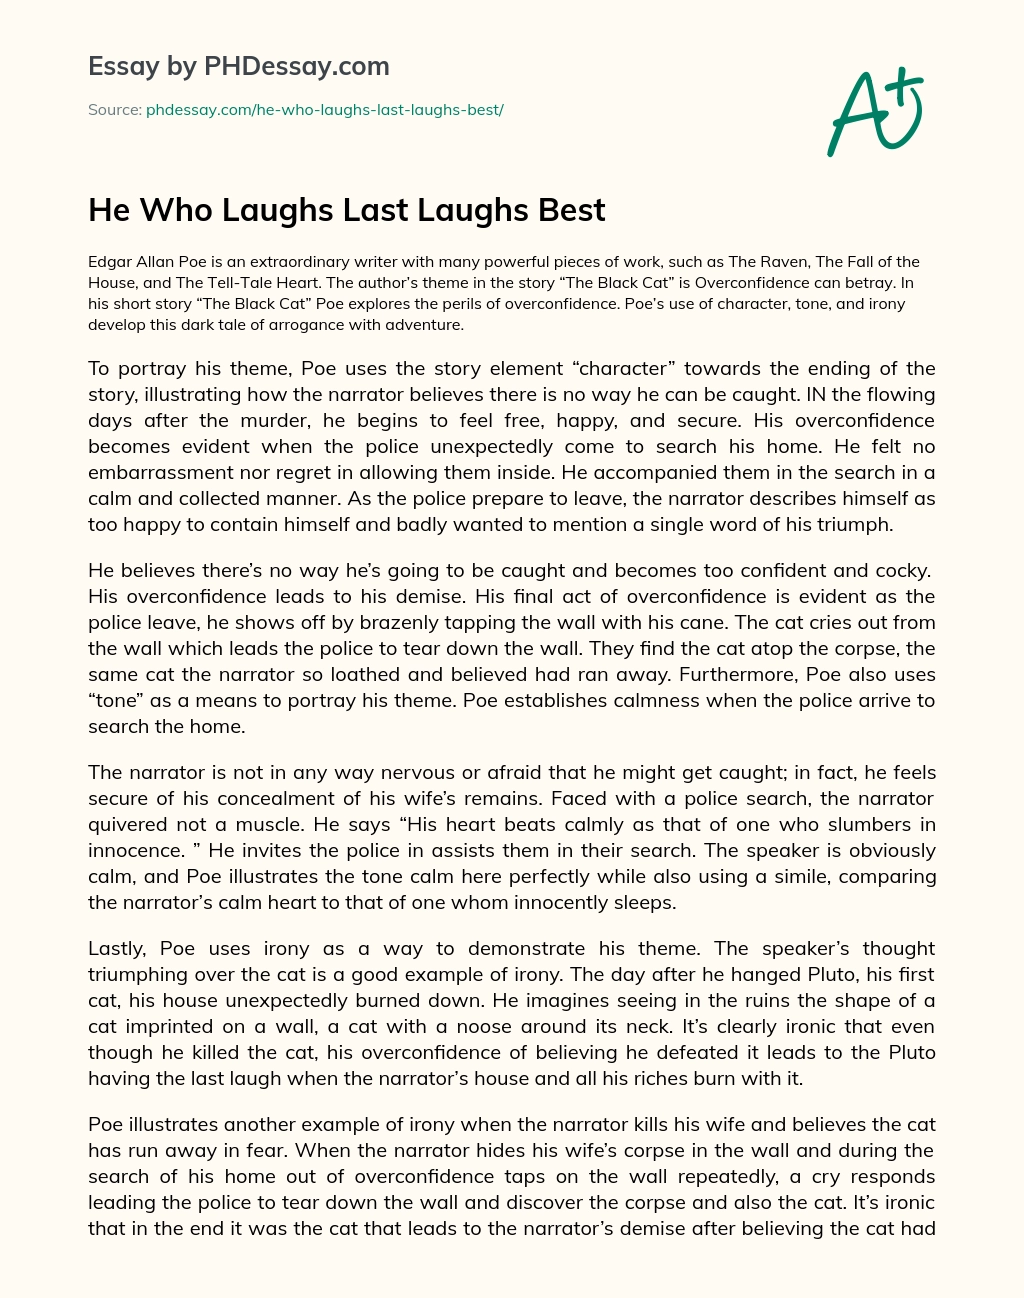 He Who Laughs Last Laughs Best essay